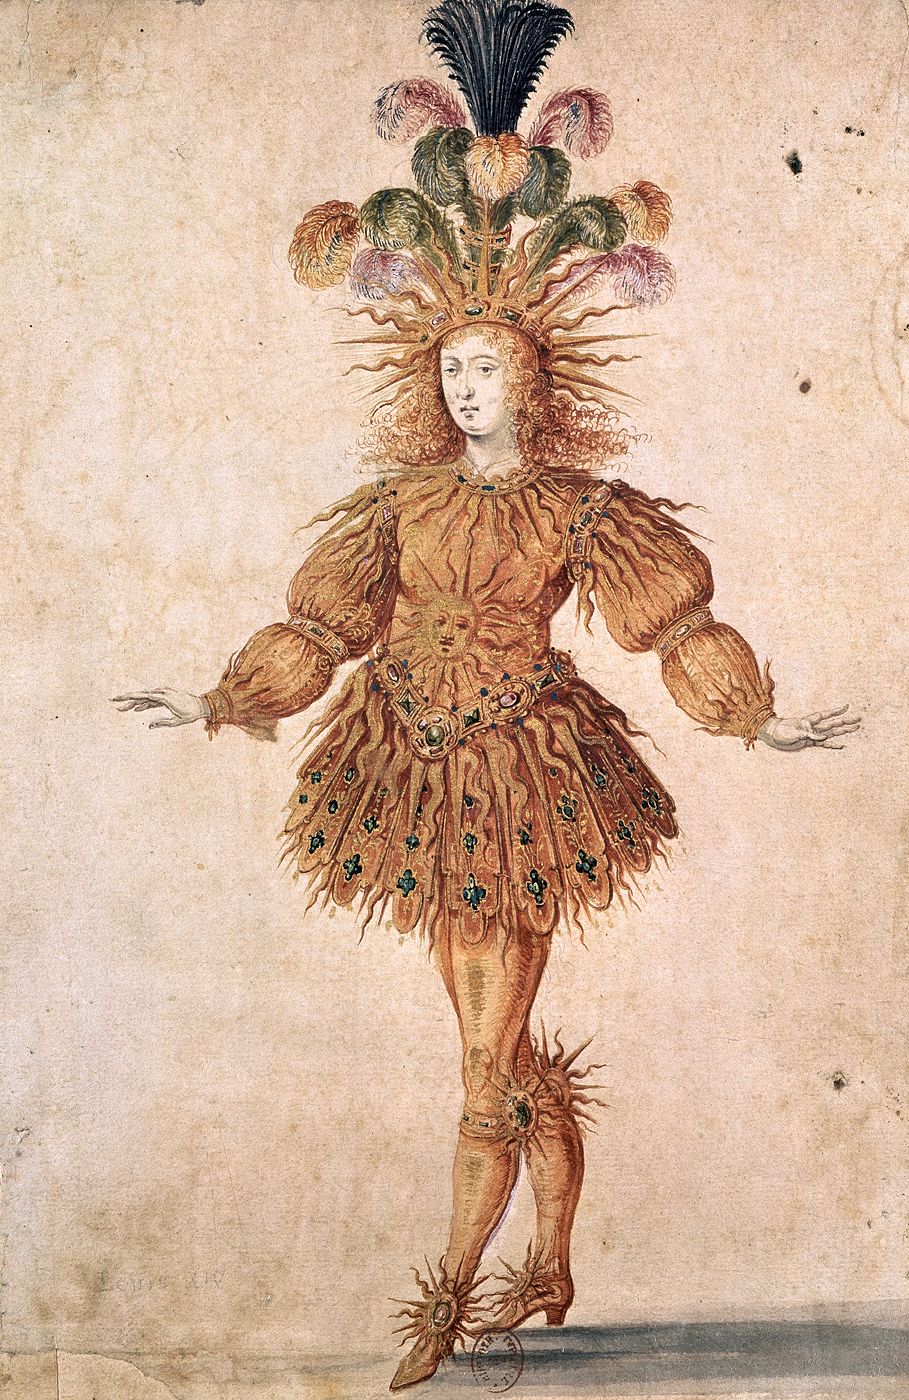 Résultat de recherche d'images pour "Louis XIV danse"